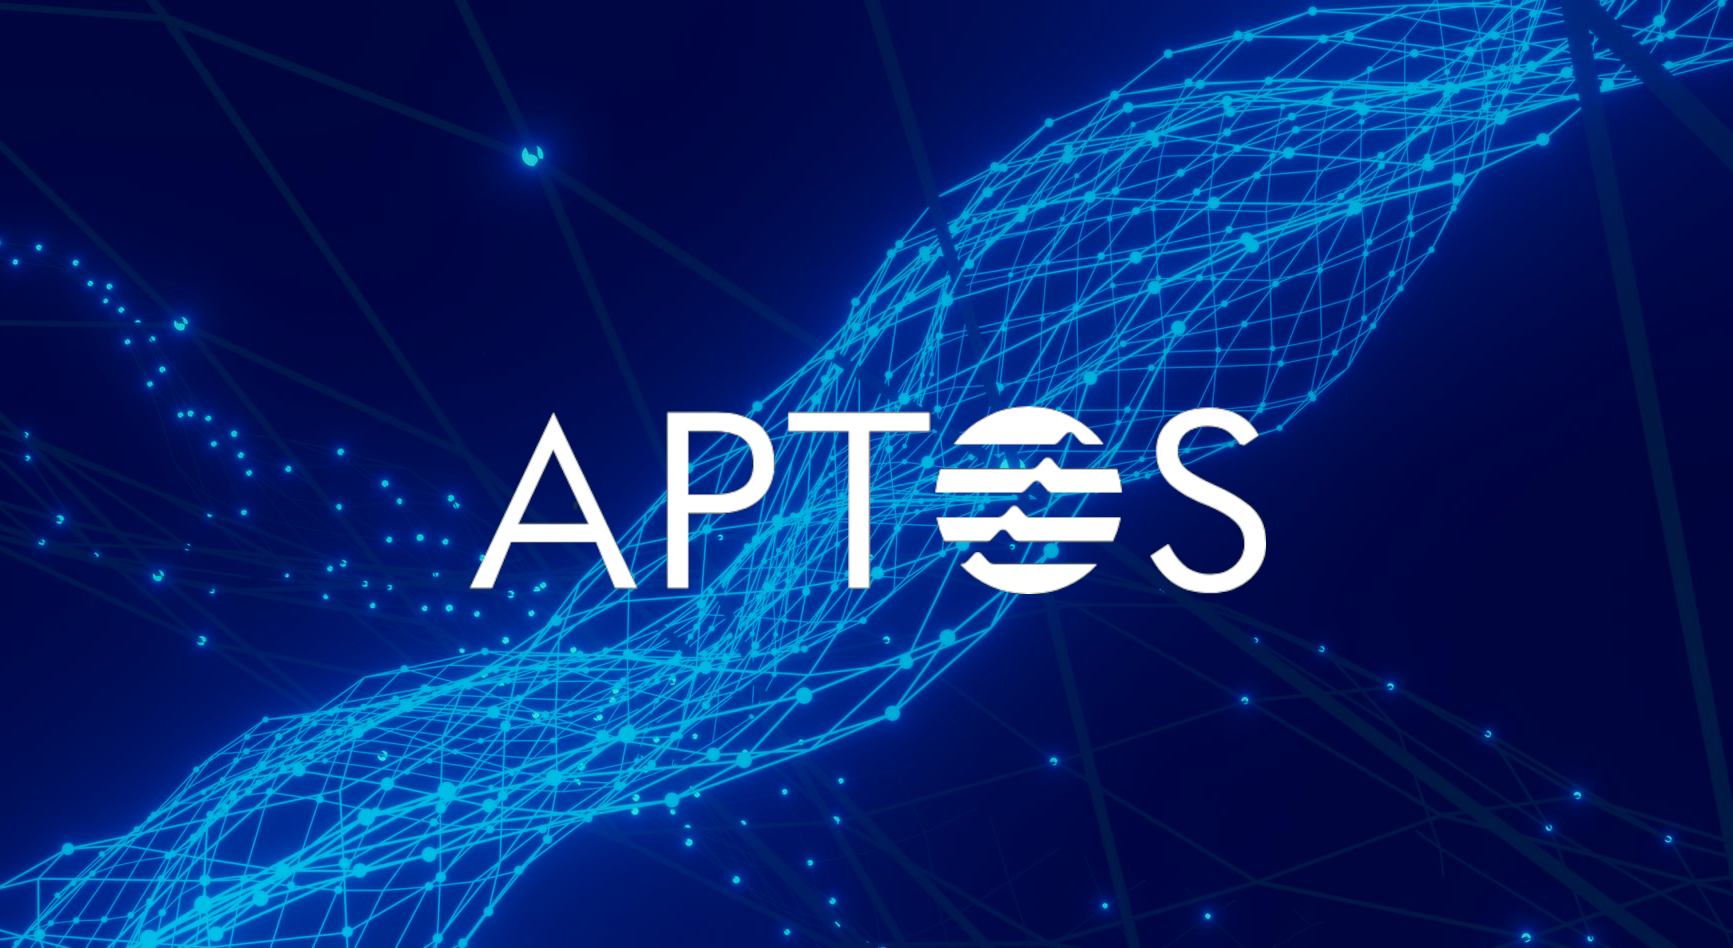 Aptos blockchain image cover